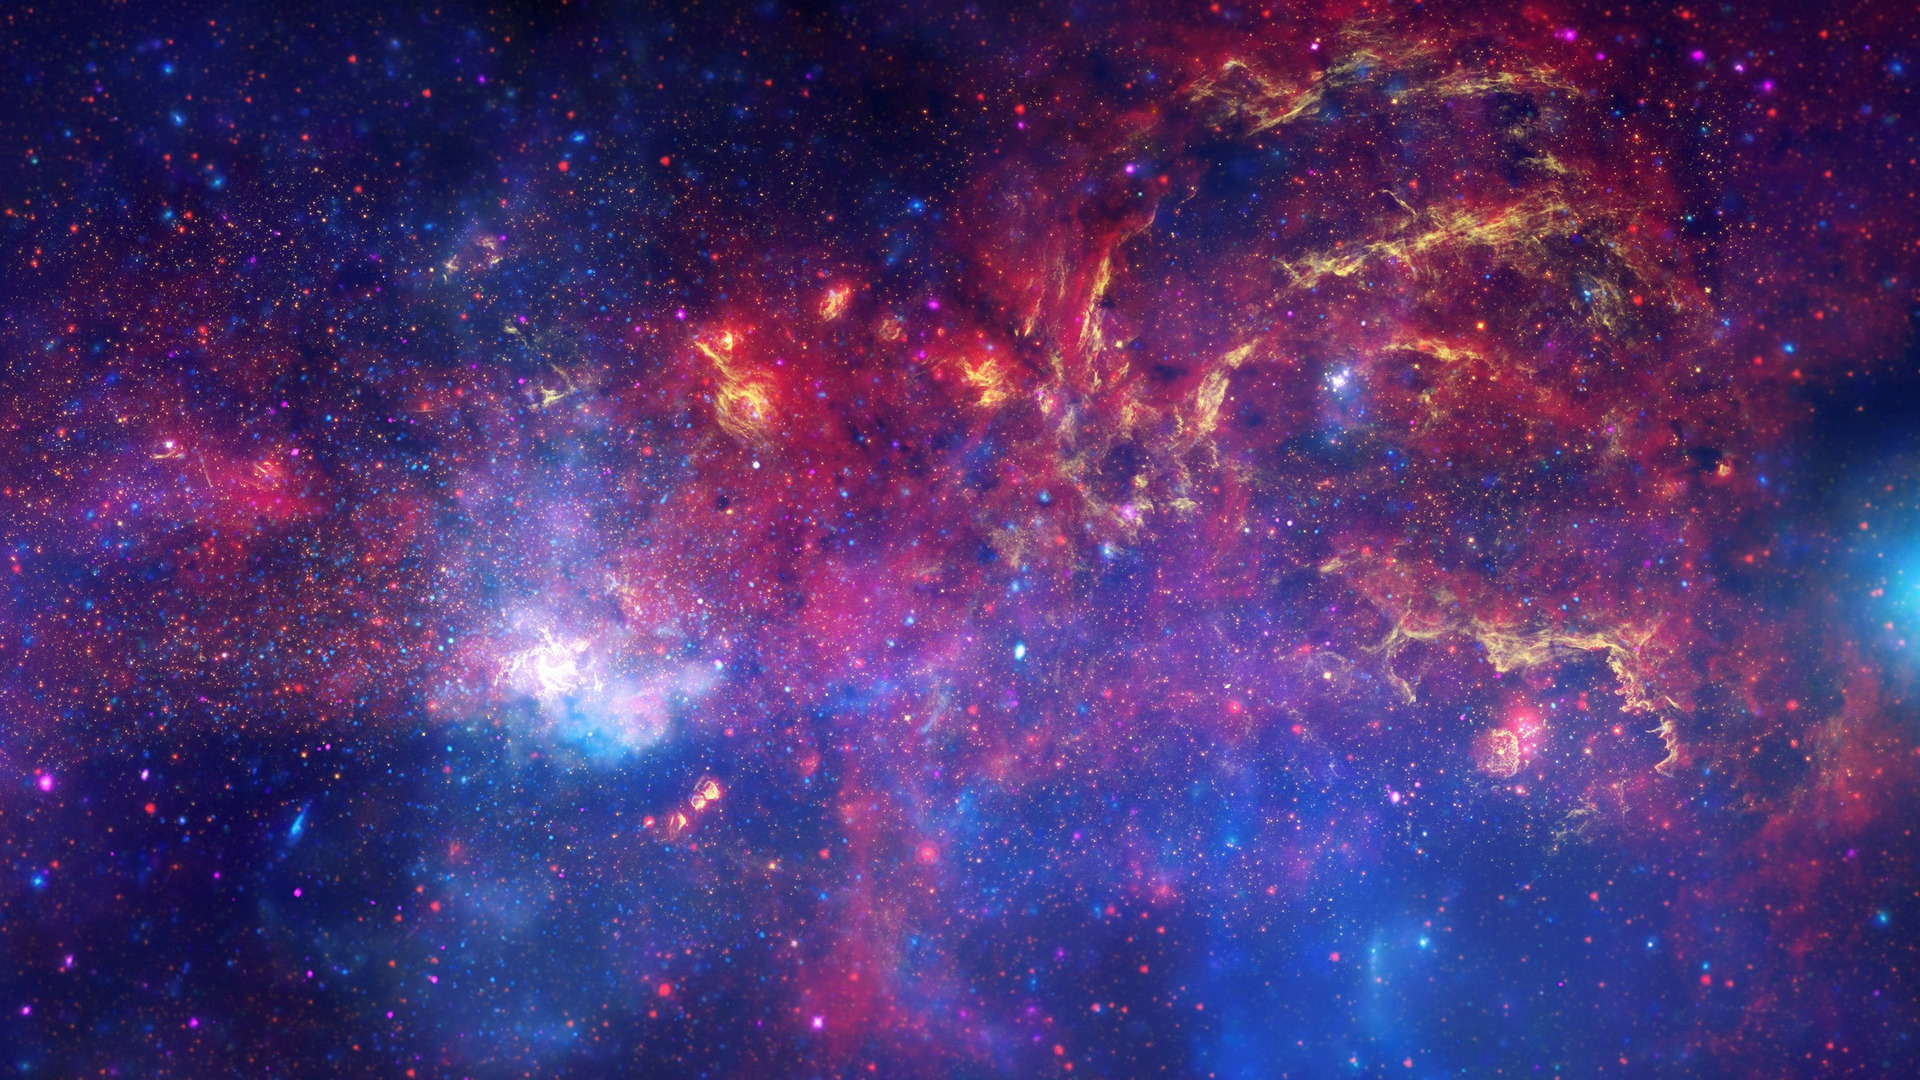 Purple Galaxy hd Wallpaper 1080p Space Galaxy Wallpaper hd 1920x1080